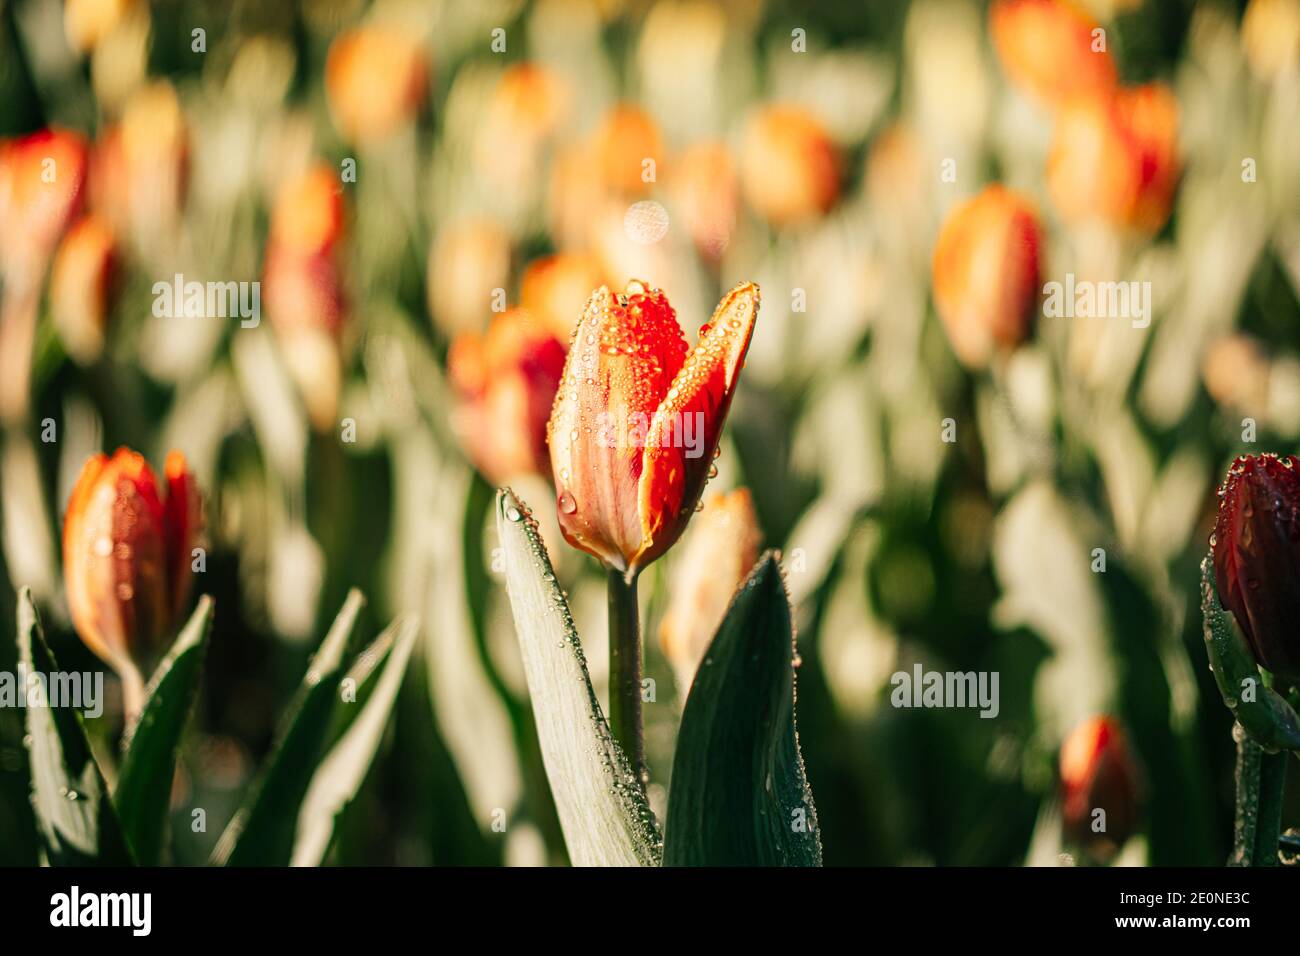 Primer plano de flores de tulipanes anaranjados en el jardín con rociado de agua, rocío y luz solar. Fondo natural. Foto de stock